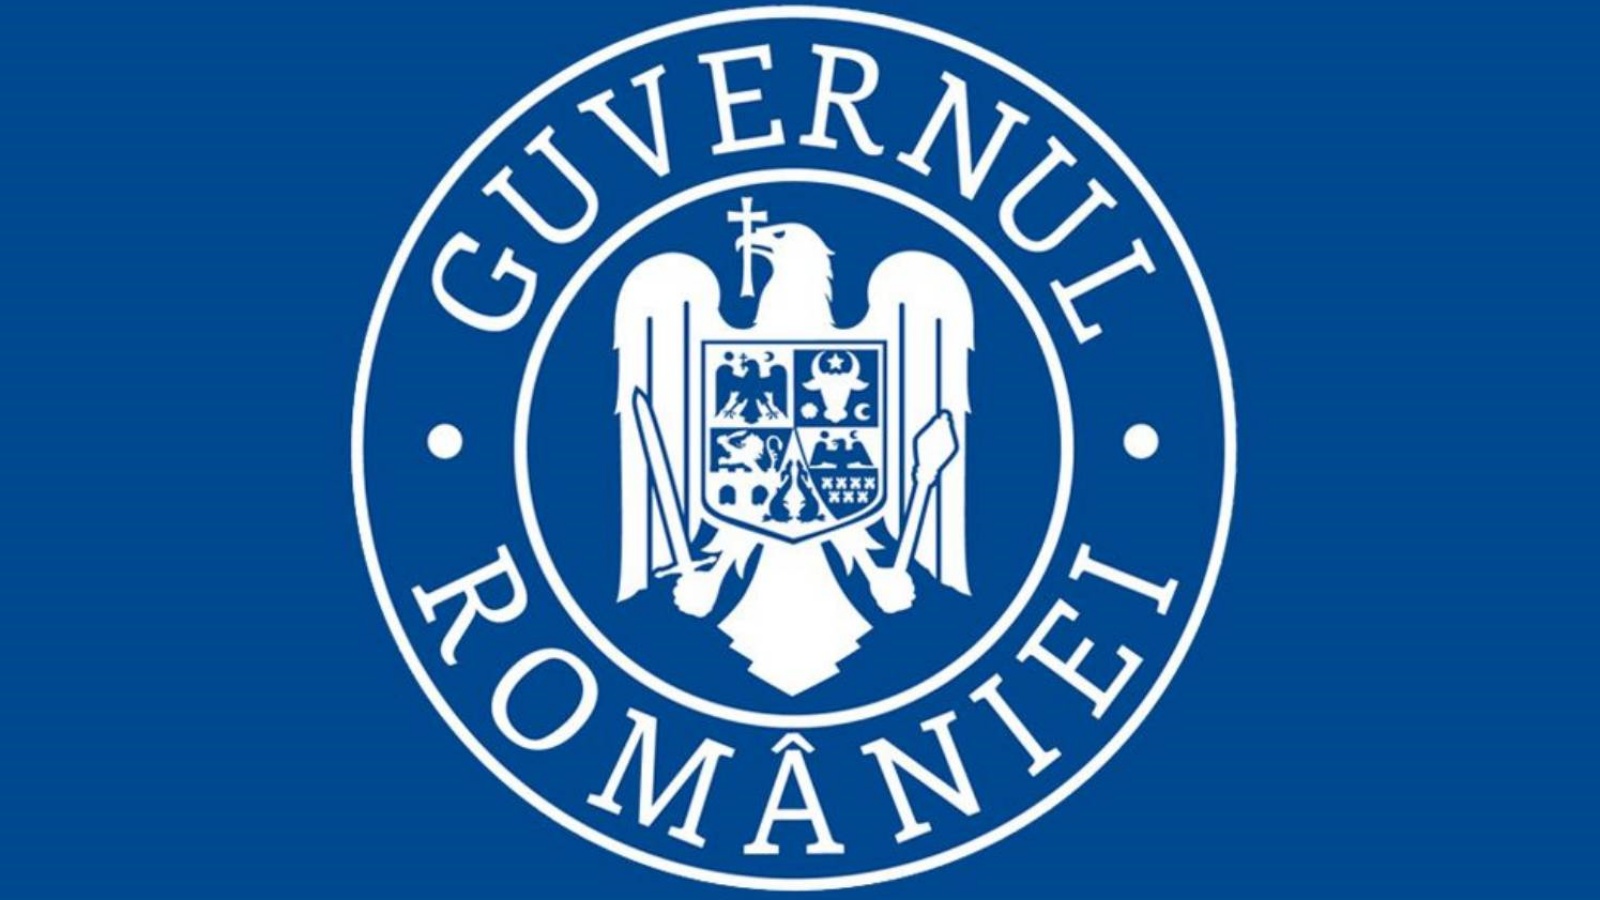 De regering van Roemenië viert de NAVO-dag, zoals verklaard door Nicolae Ciuca